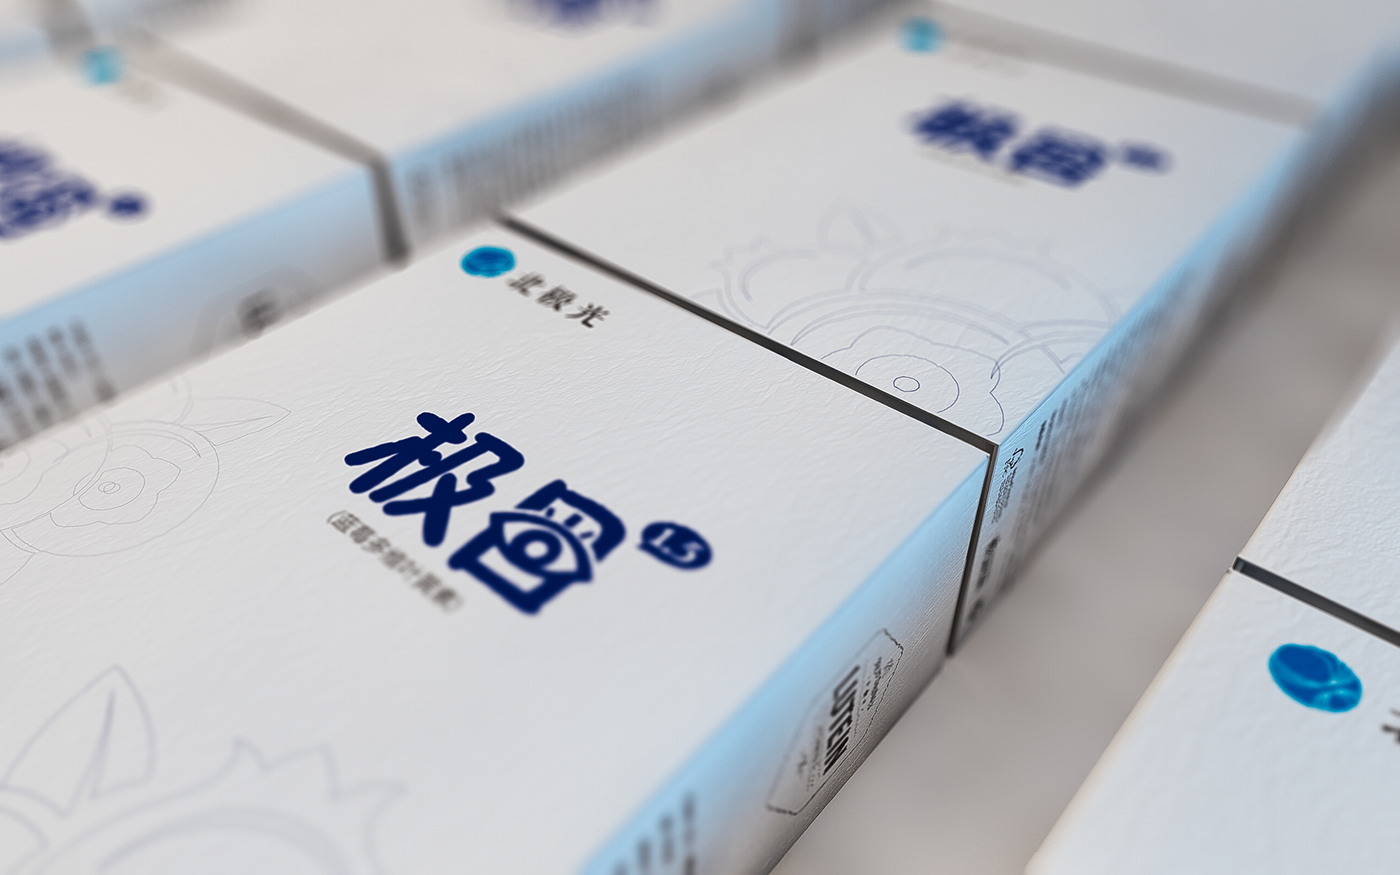 Design of blueberry lutein packaging scheme